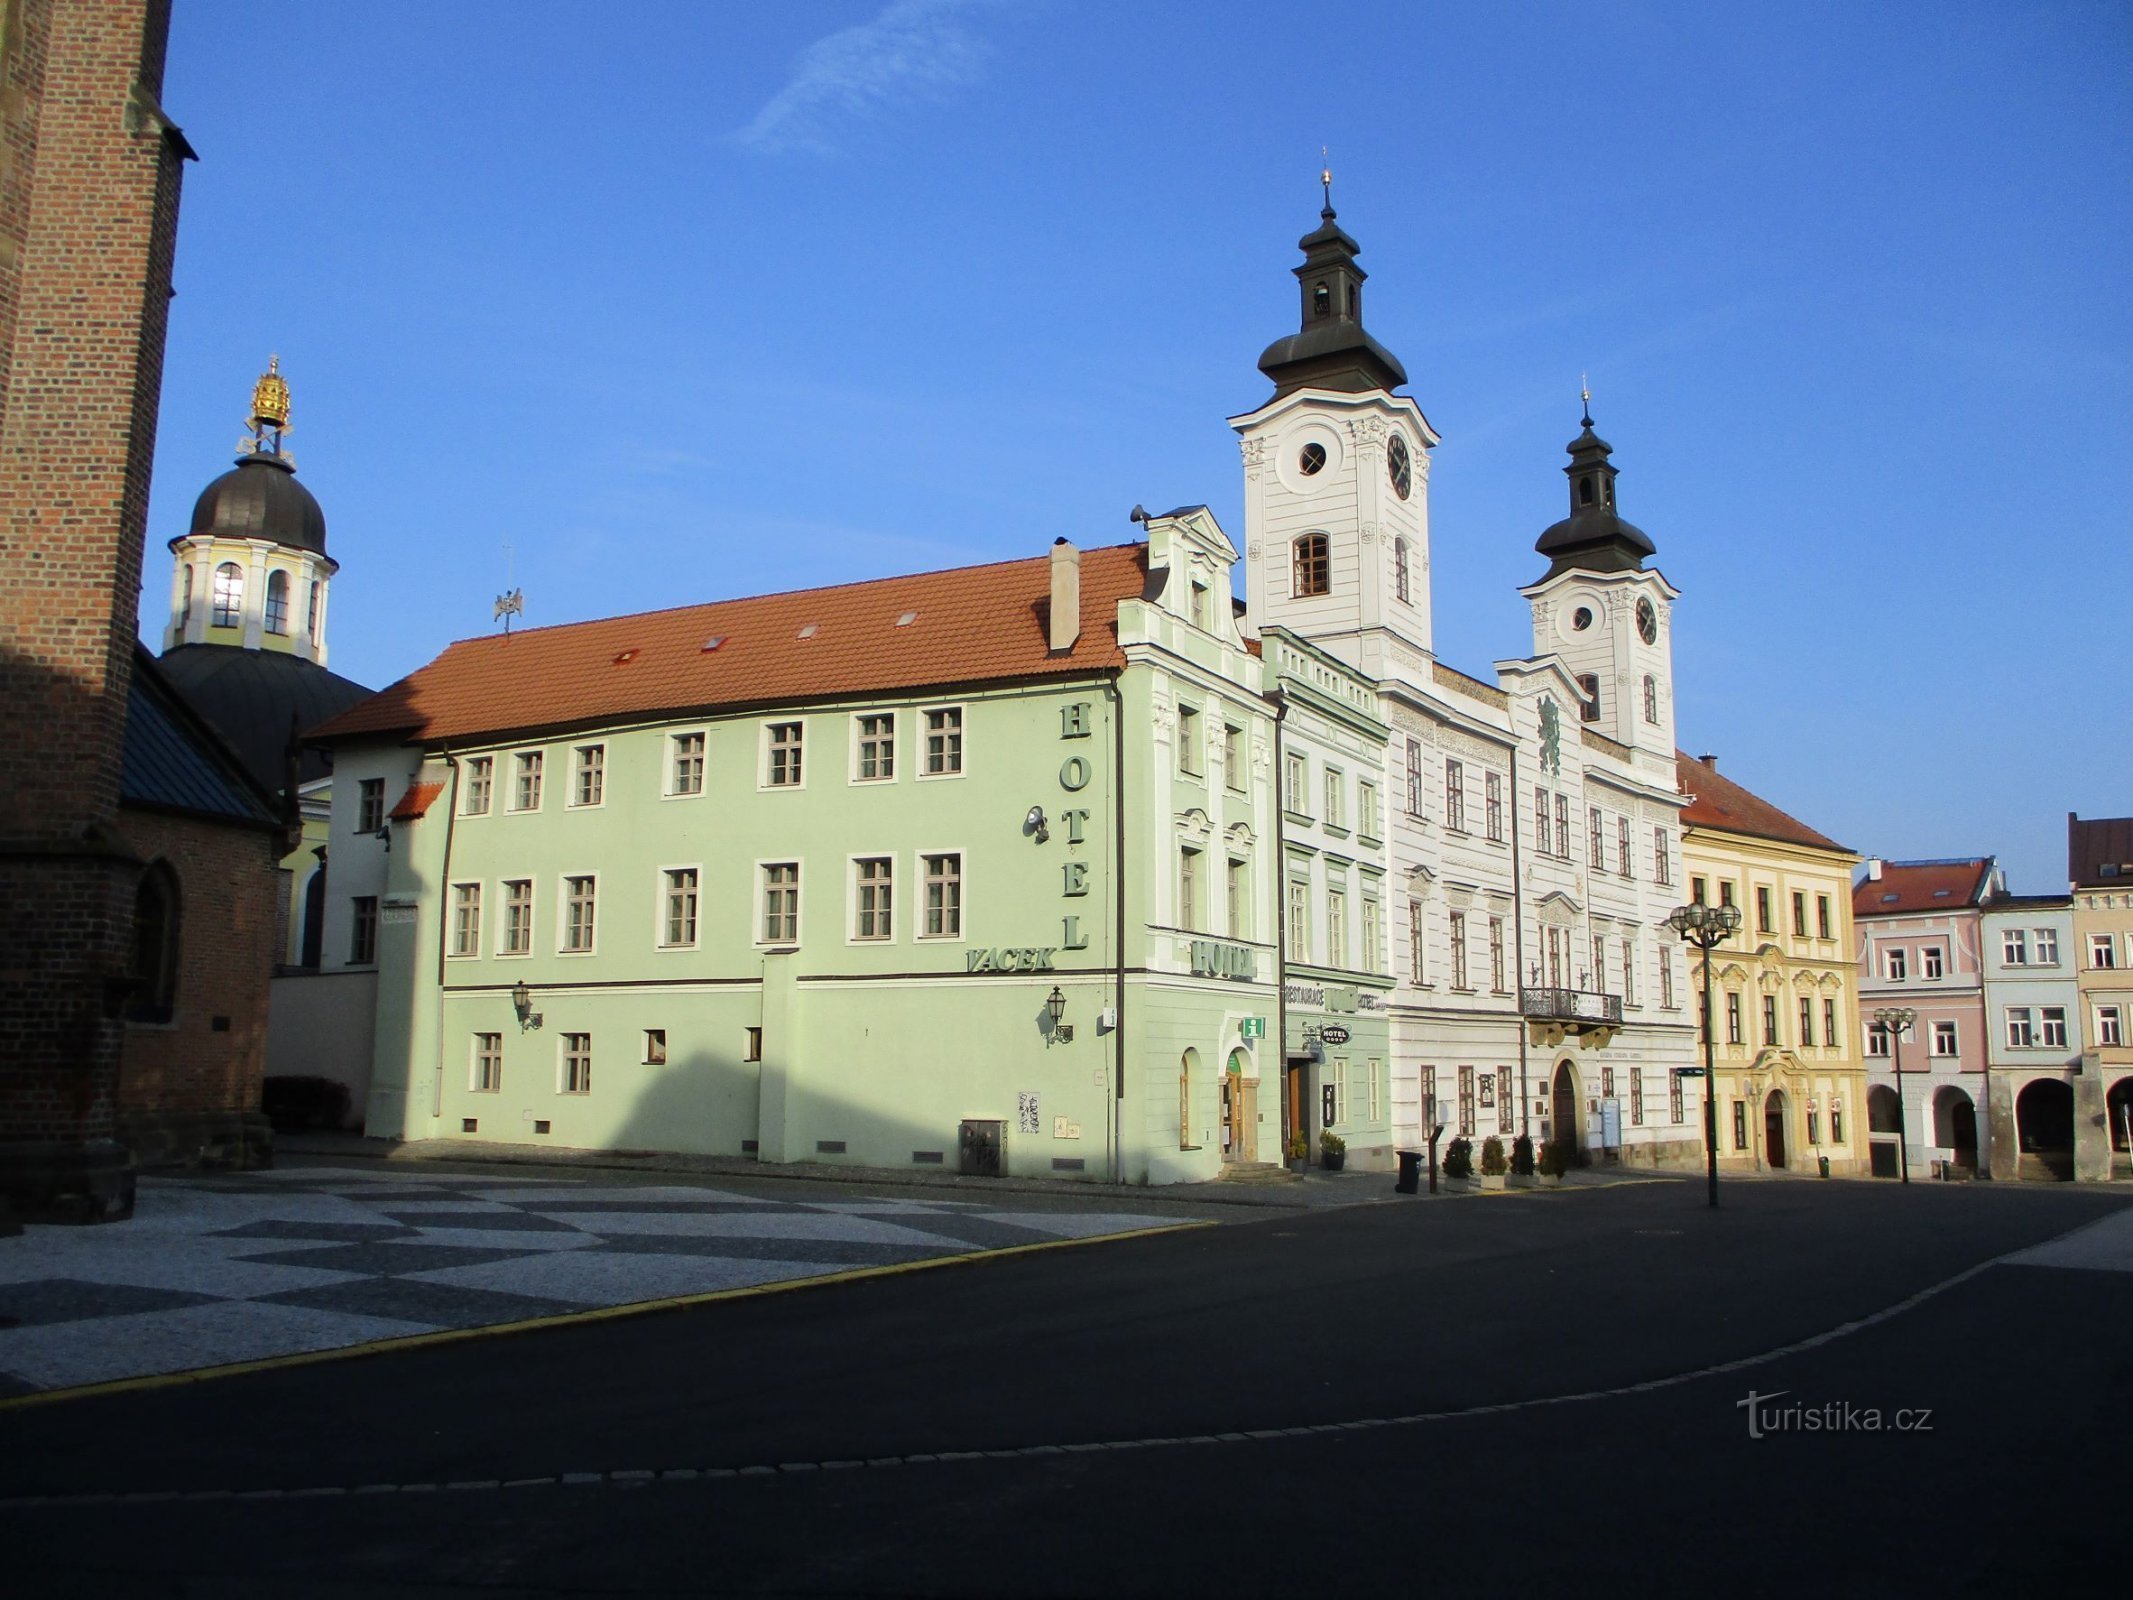 Velké náměstí fra nr. 166 (Hradec Králové, 9.2.2020. februar XNUMX)